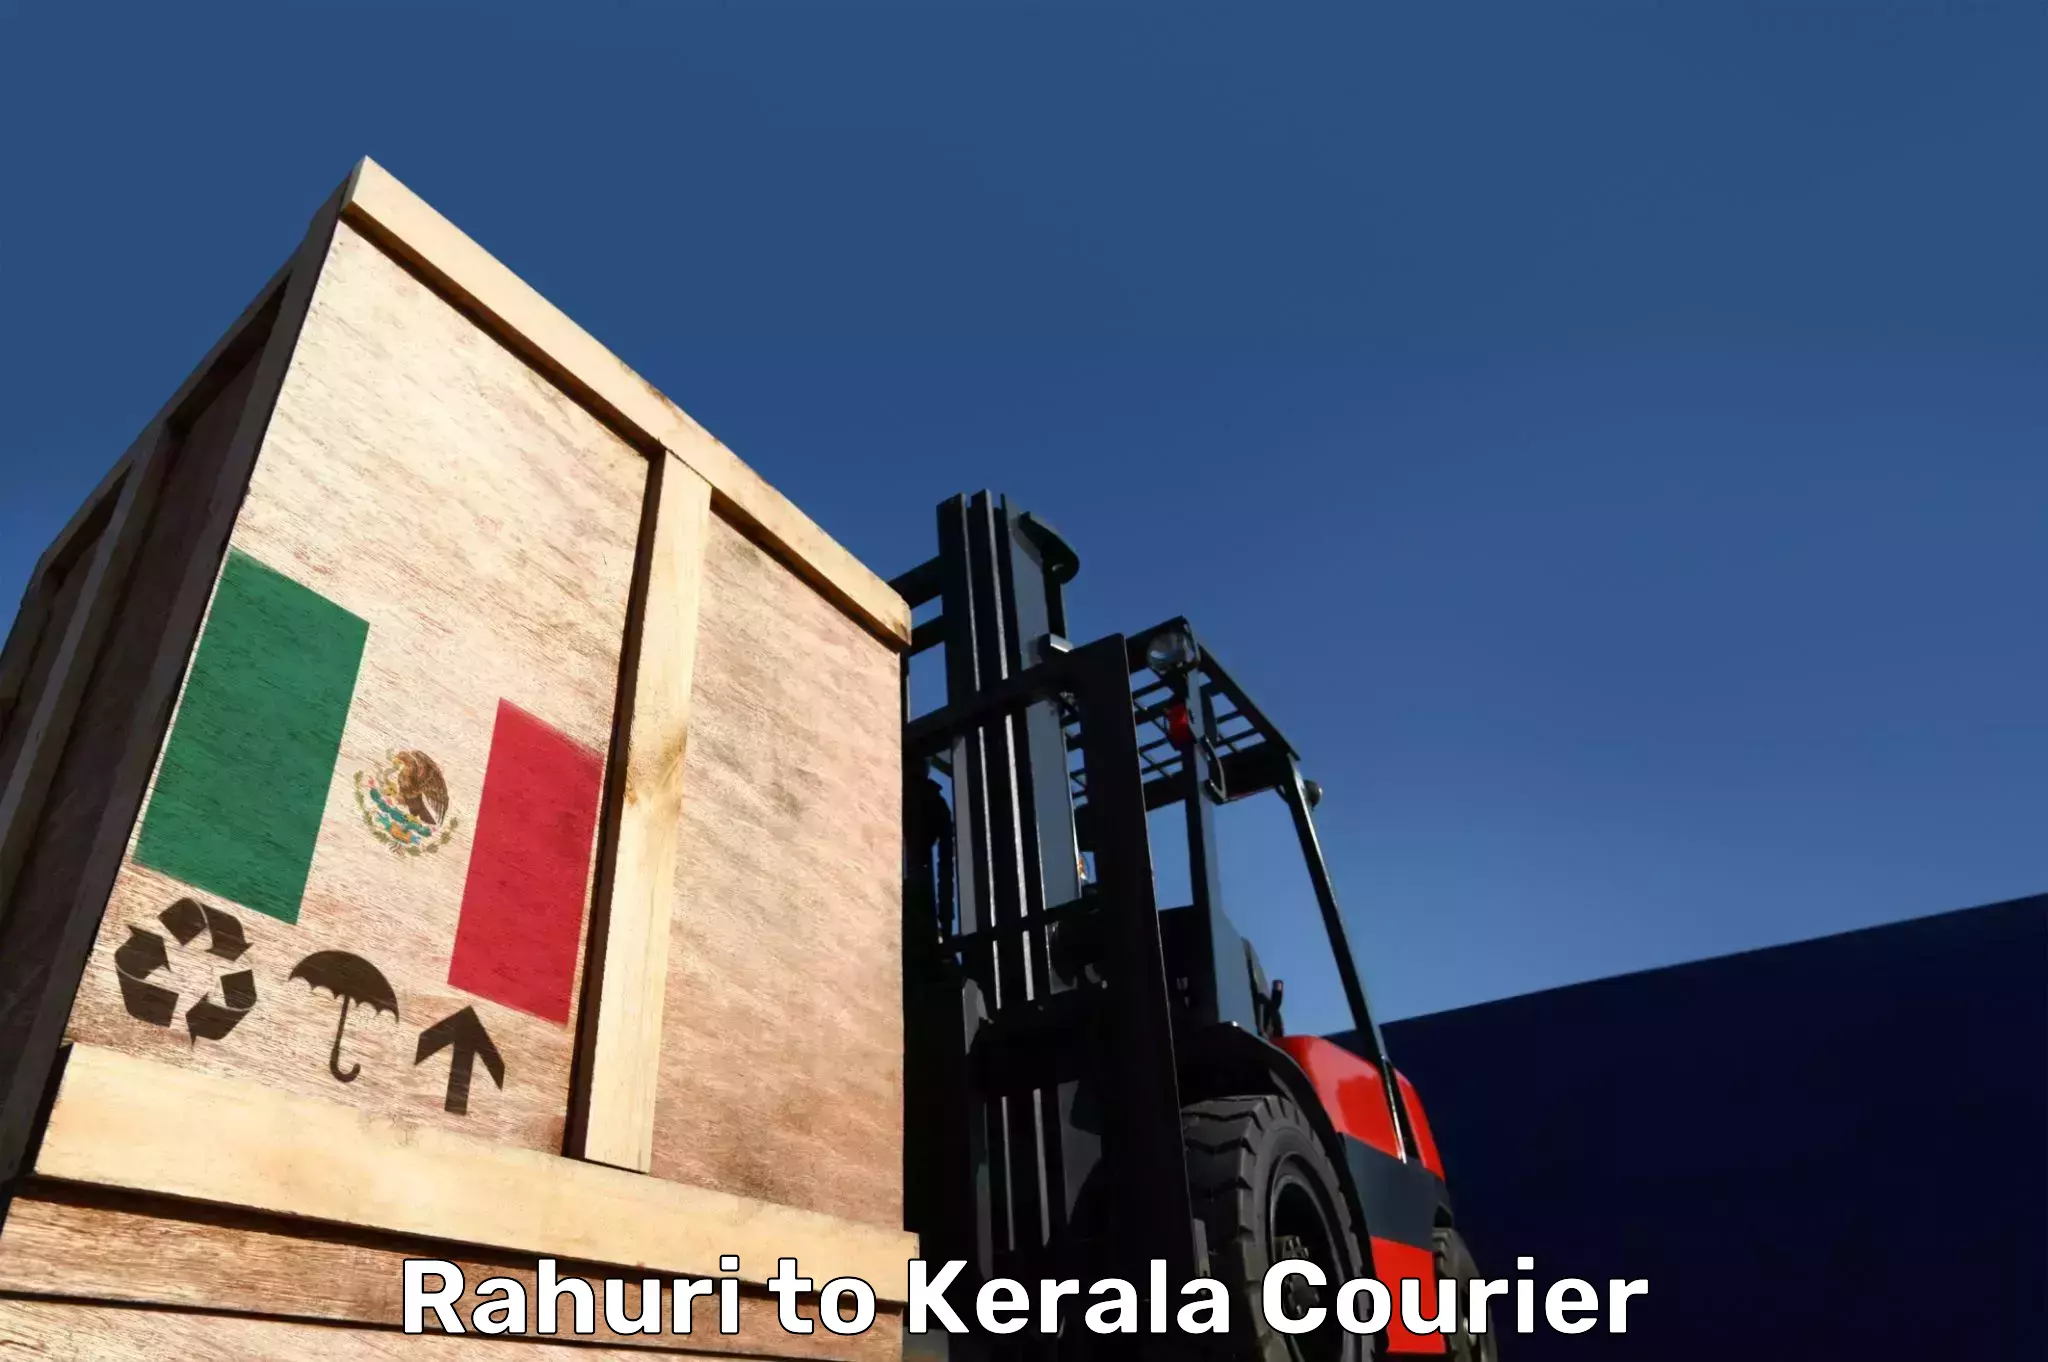 Baggage shipping calculator Rahuri to Thiruvananthapuram